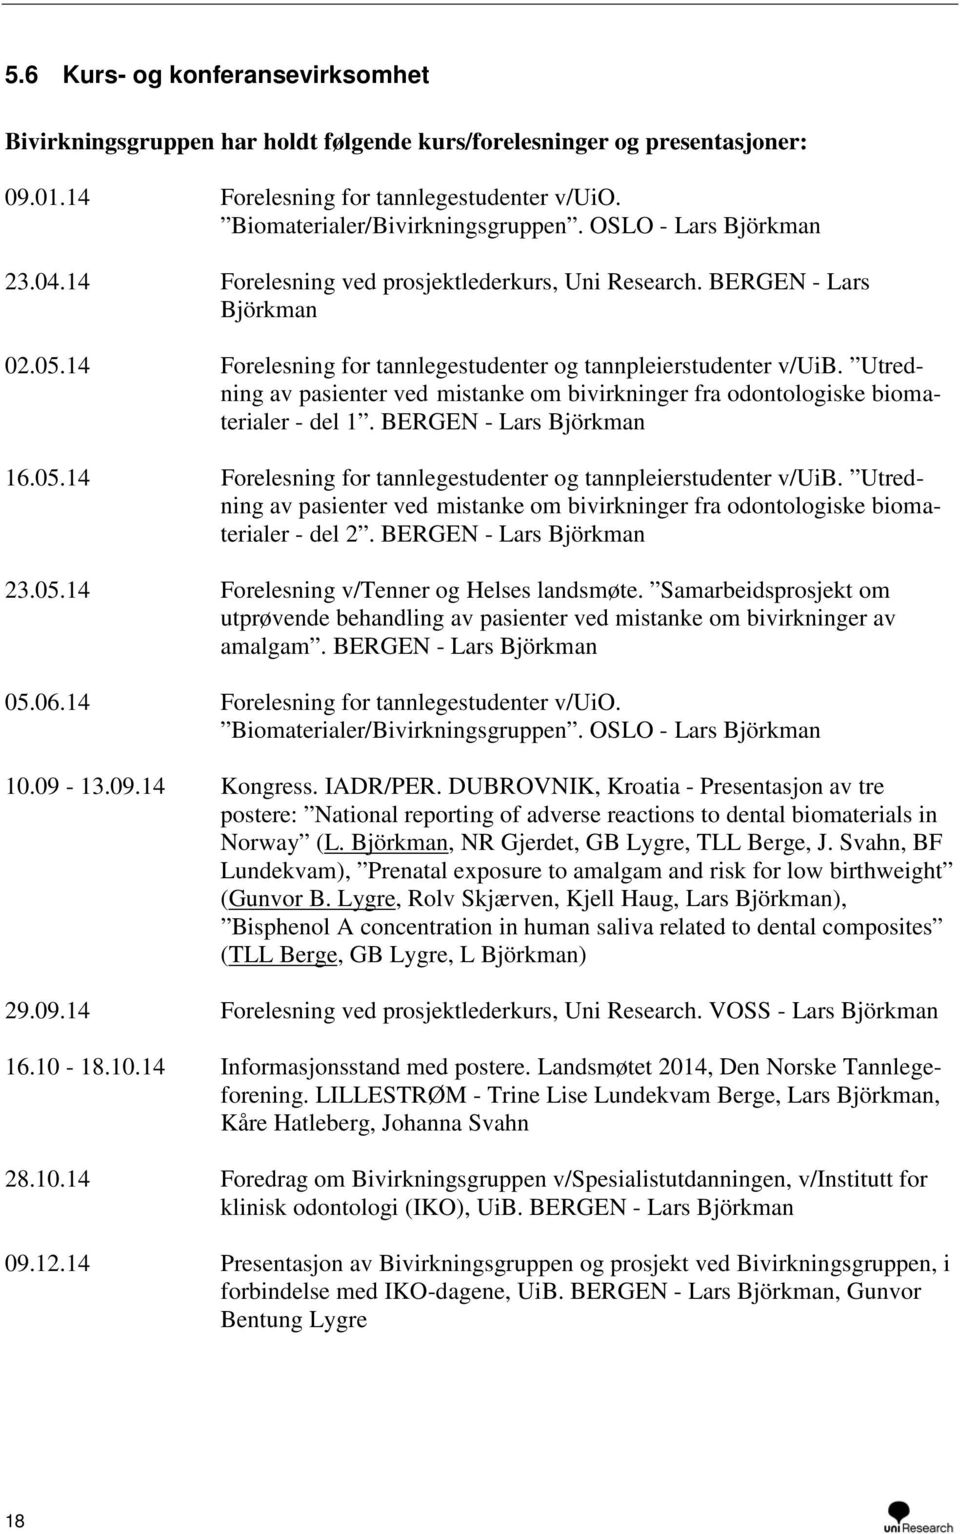 Utredning av pasienter ved mistanke om bivirkninger fra odontologiske biomaterialer - del 1. BERGEN - Lars Björkman 16.05.14 Forelesning for tannlegestudenter og tannpleierstudenter v/uib.